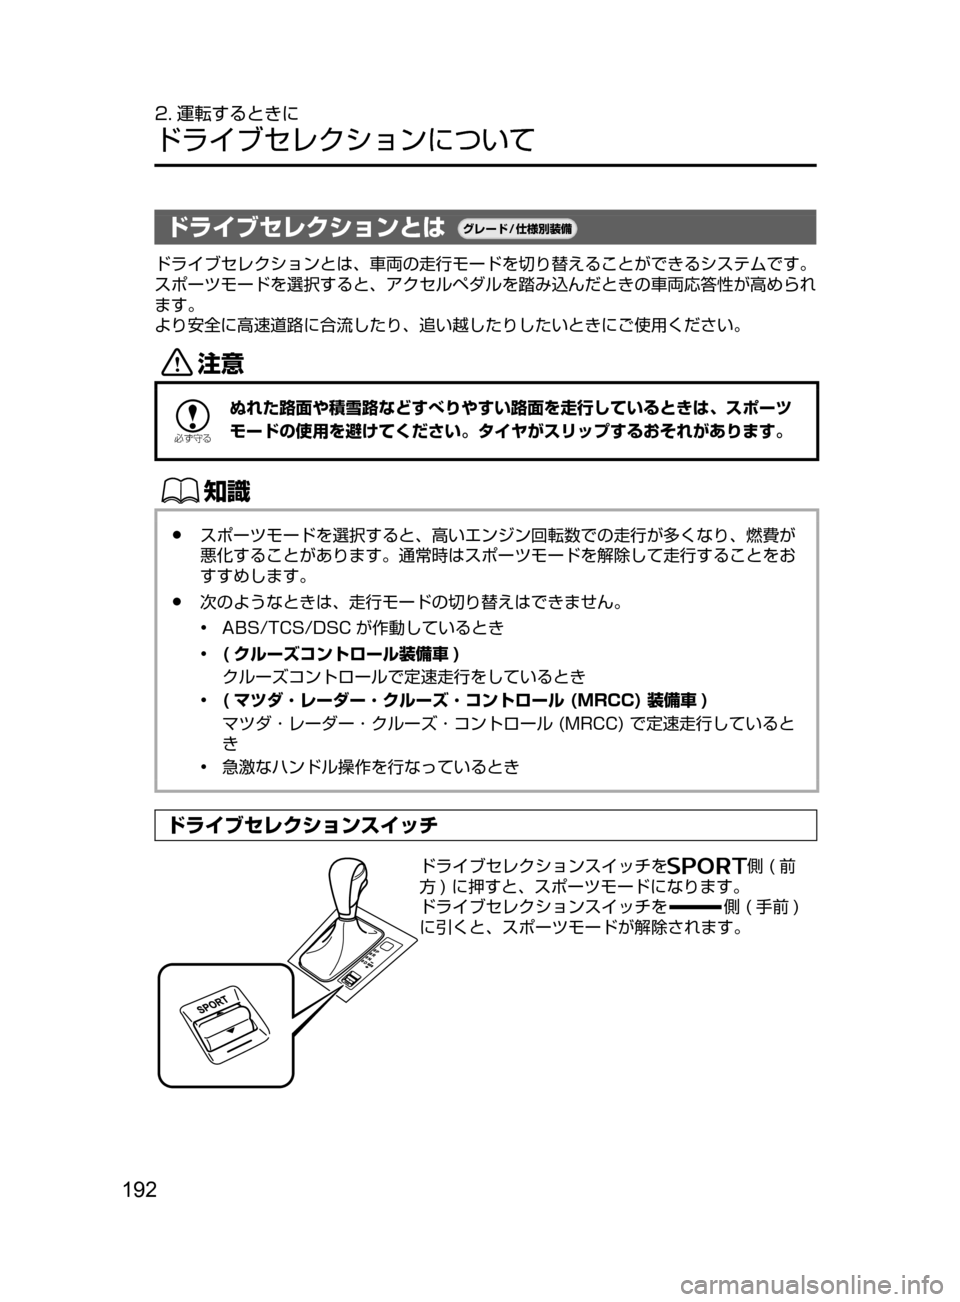 MAZDA MODEL ATENZA 2016  アテンザ｜取扱説明書 (in Japanese) 192
2. 運転するときに
ドライブセレクションについて
ドライブセレクションとは¬è”Å�“7
÷
‹����
ドライブセレクションとは､ 車両の走�